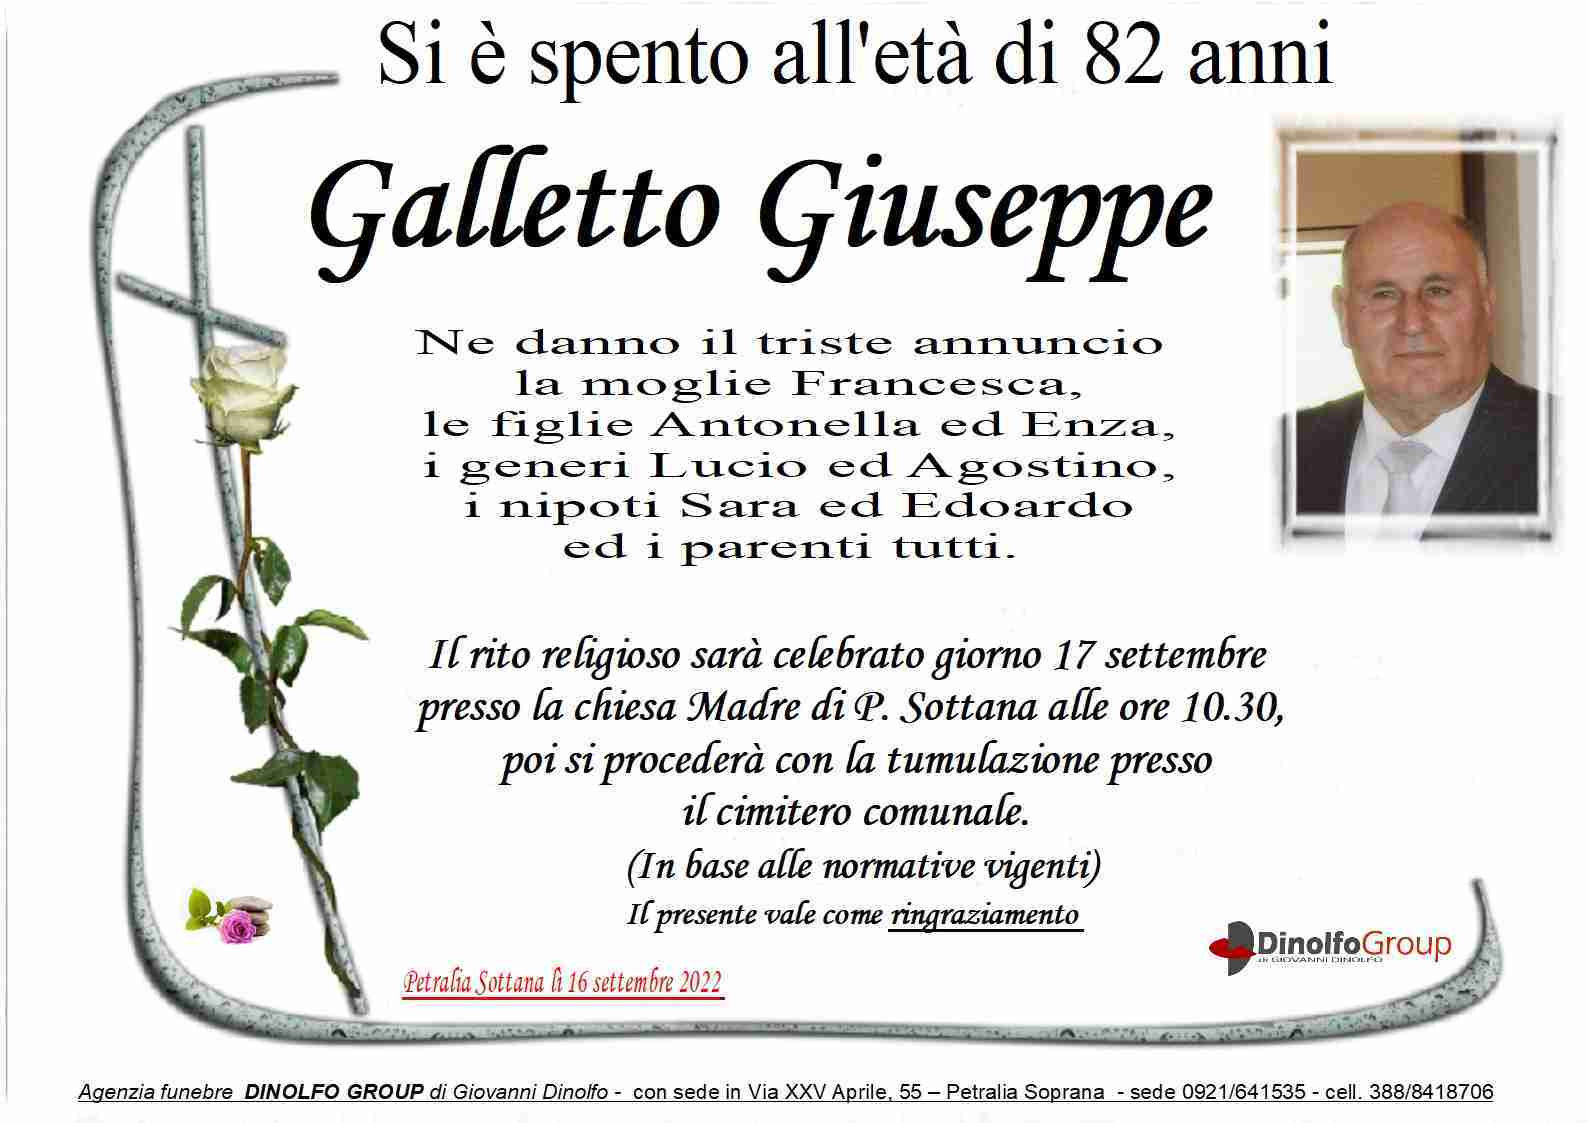 Giuseppe Galletto